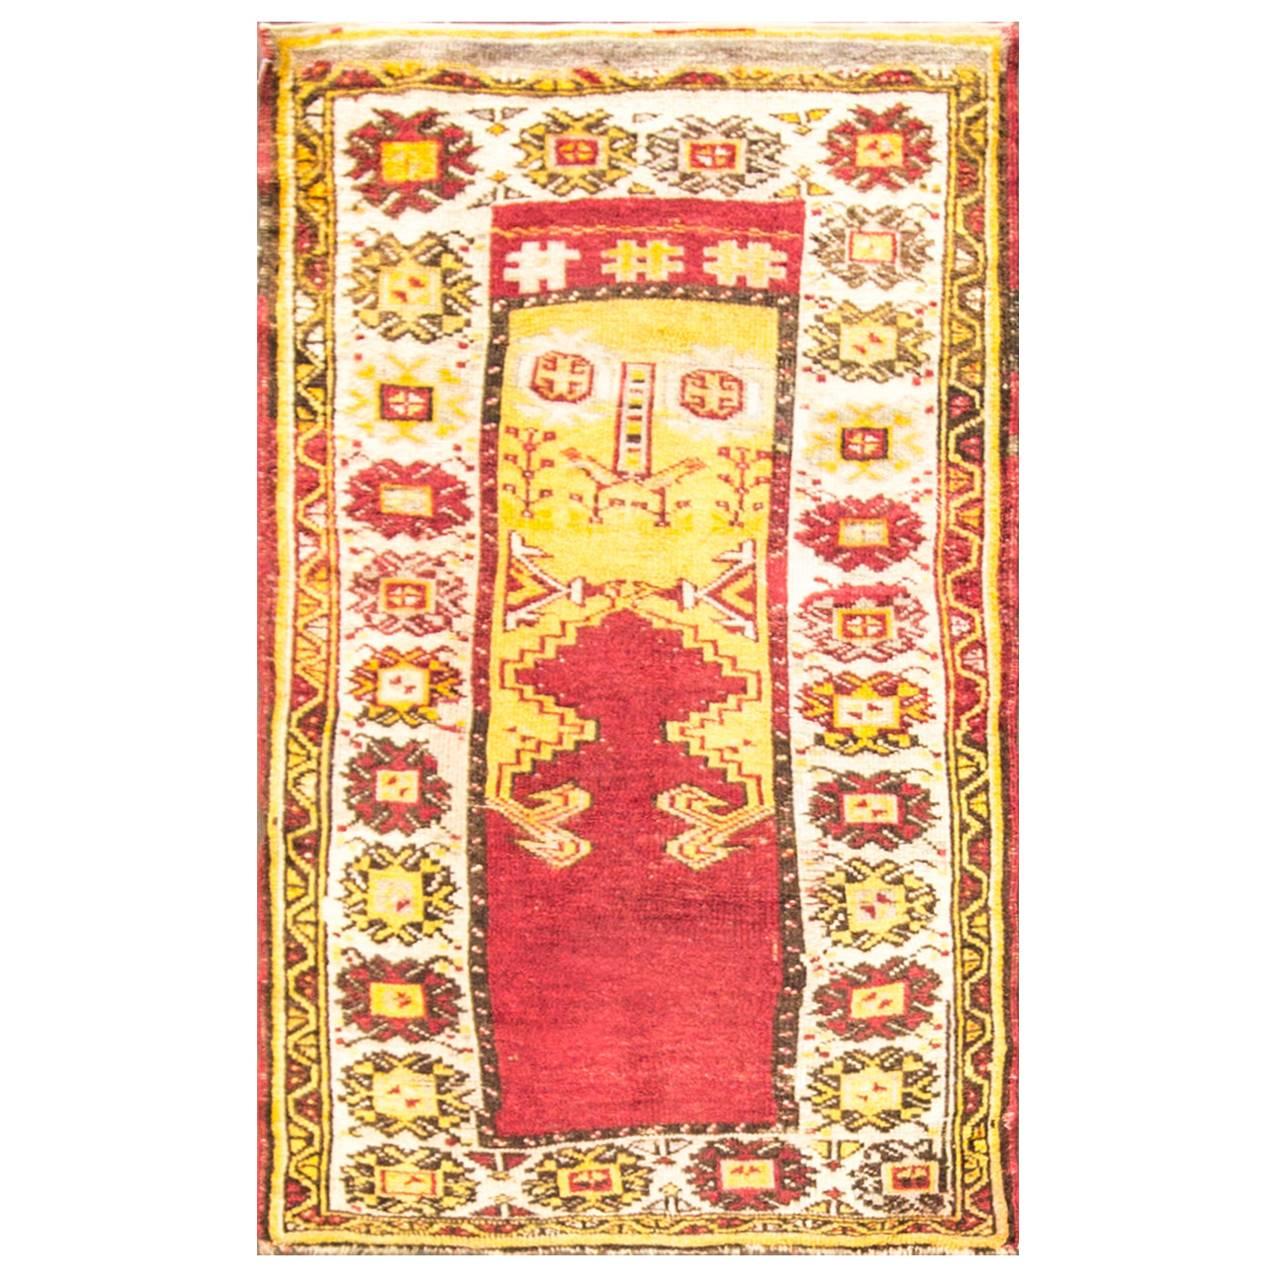  Antiker Anatolischer Oushak-Teppich, 3'3" x 4'5", kostenloser Versand